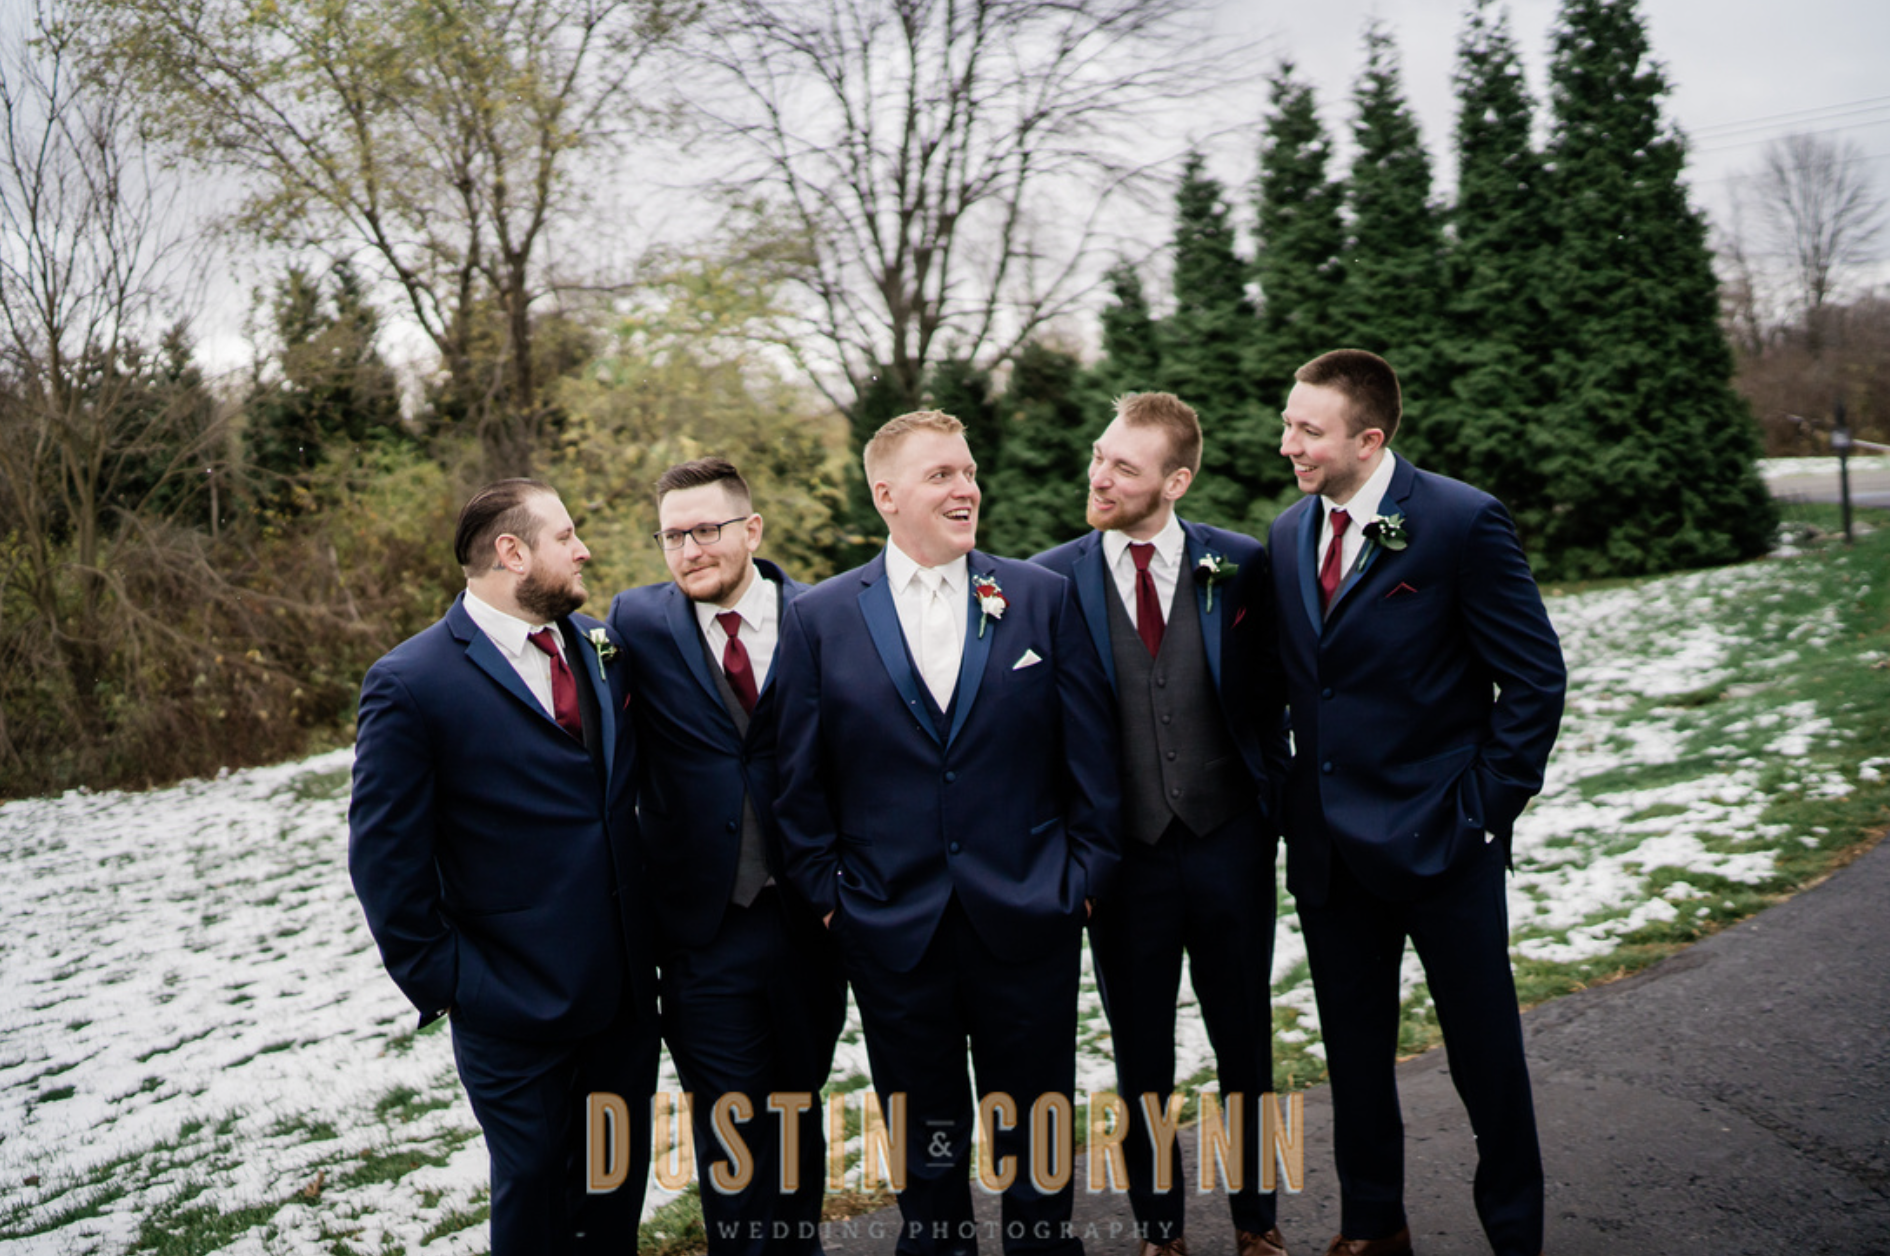 Fort Wayne wedding photographer captures groom with groomsmen